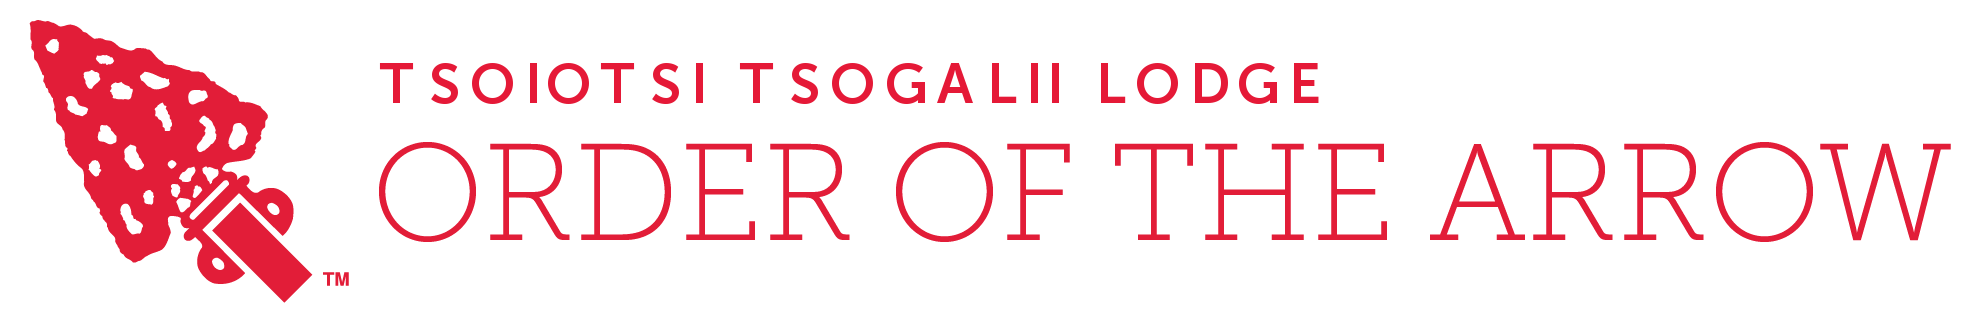 Order of the Arrow Logo - Tsoiotsi Tsogalii Lodge